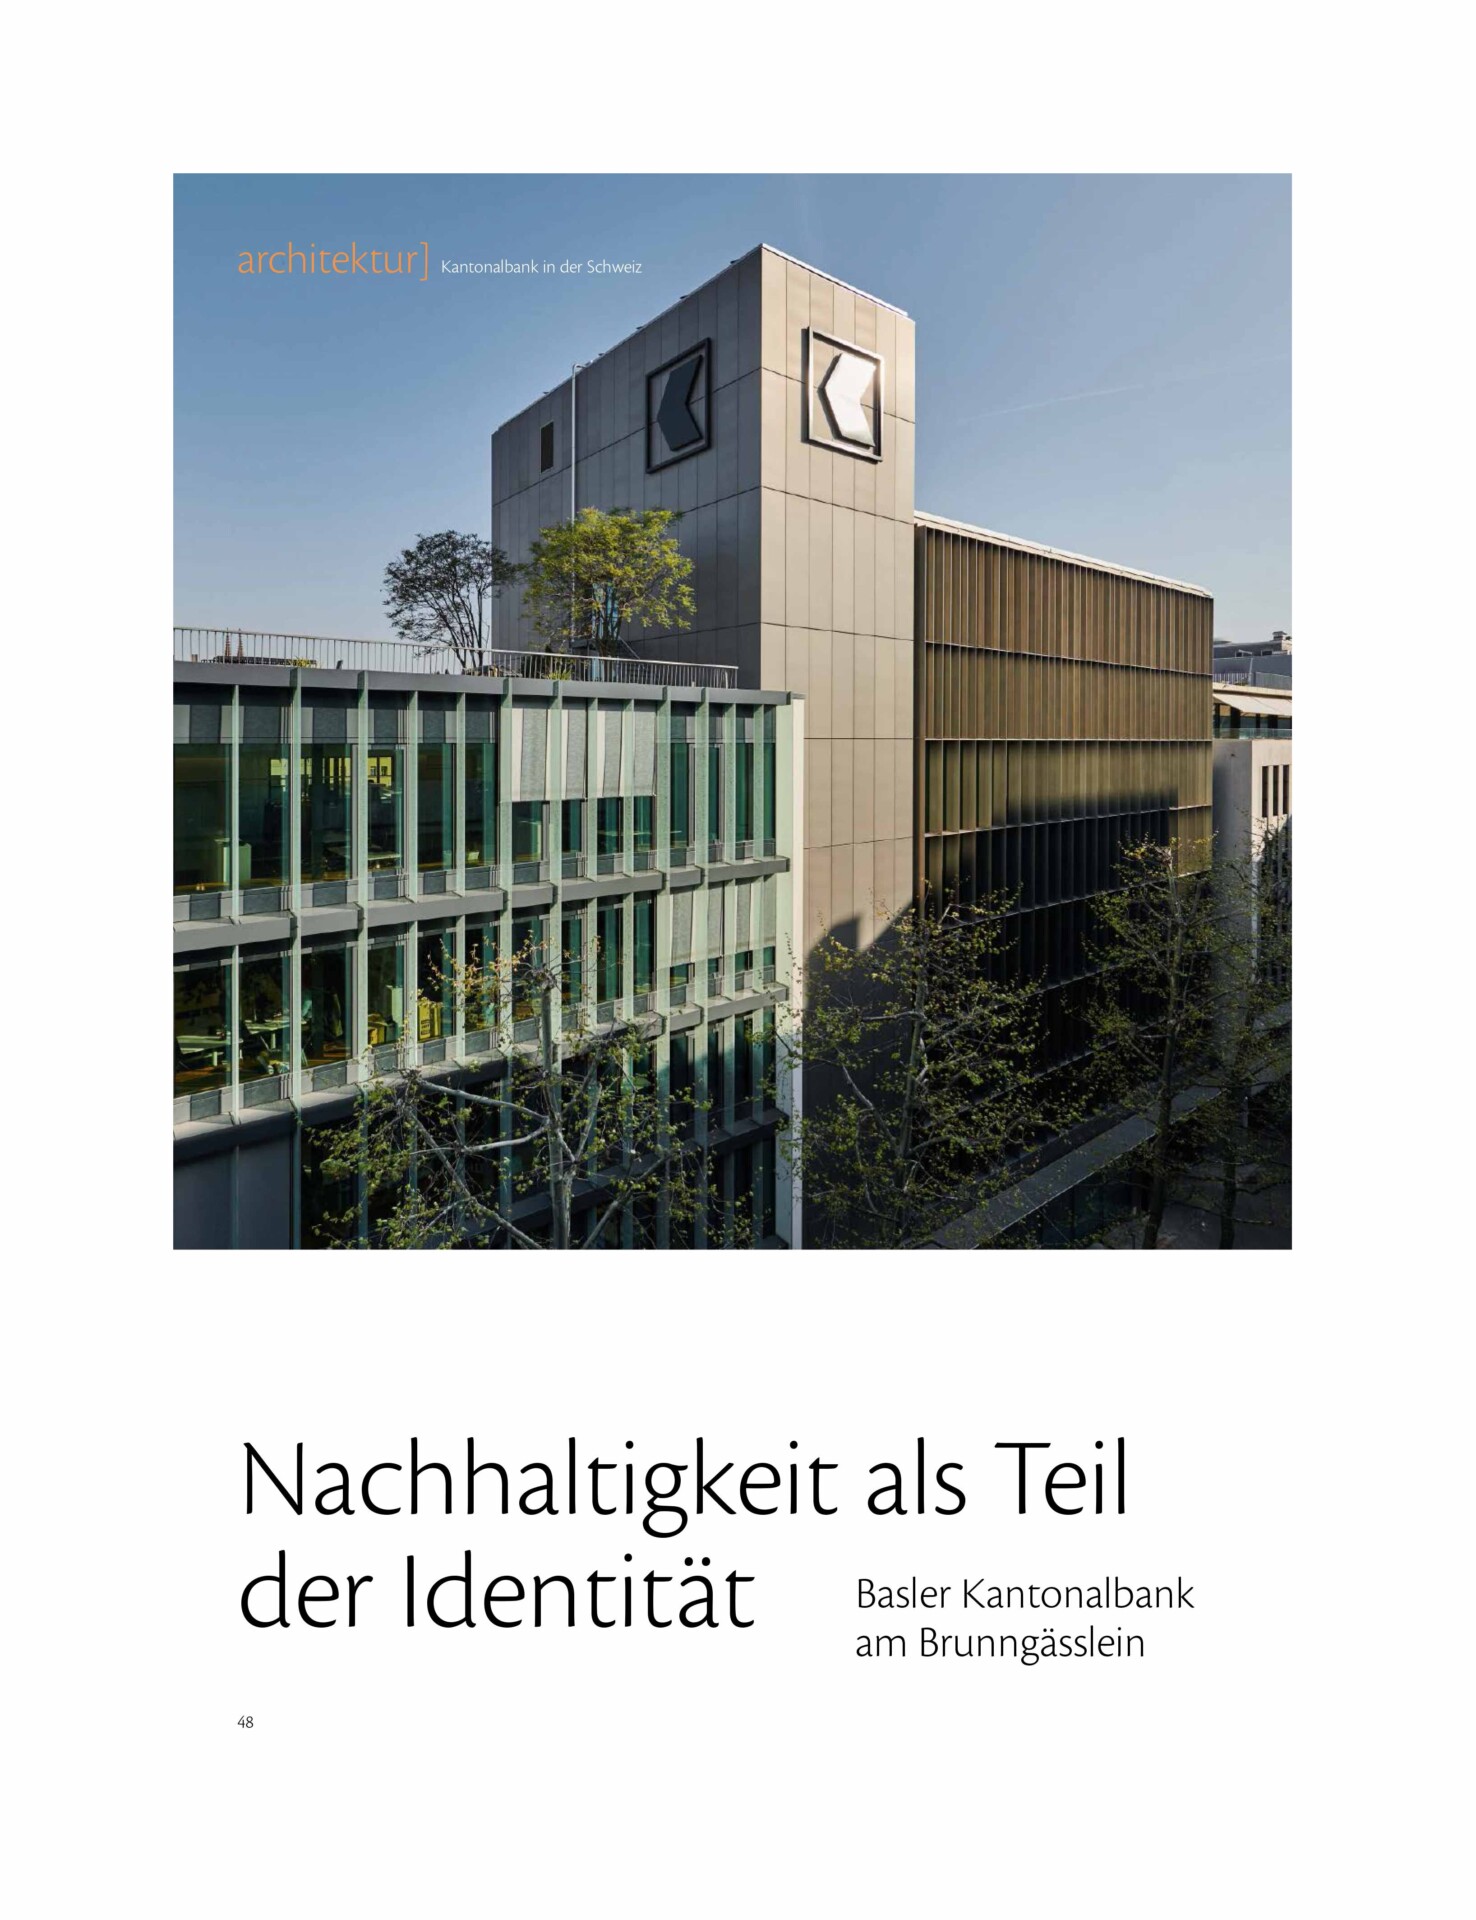 Basler Kantonalbank Journal Architektur Und Planung 032023 Mint Architecture